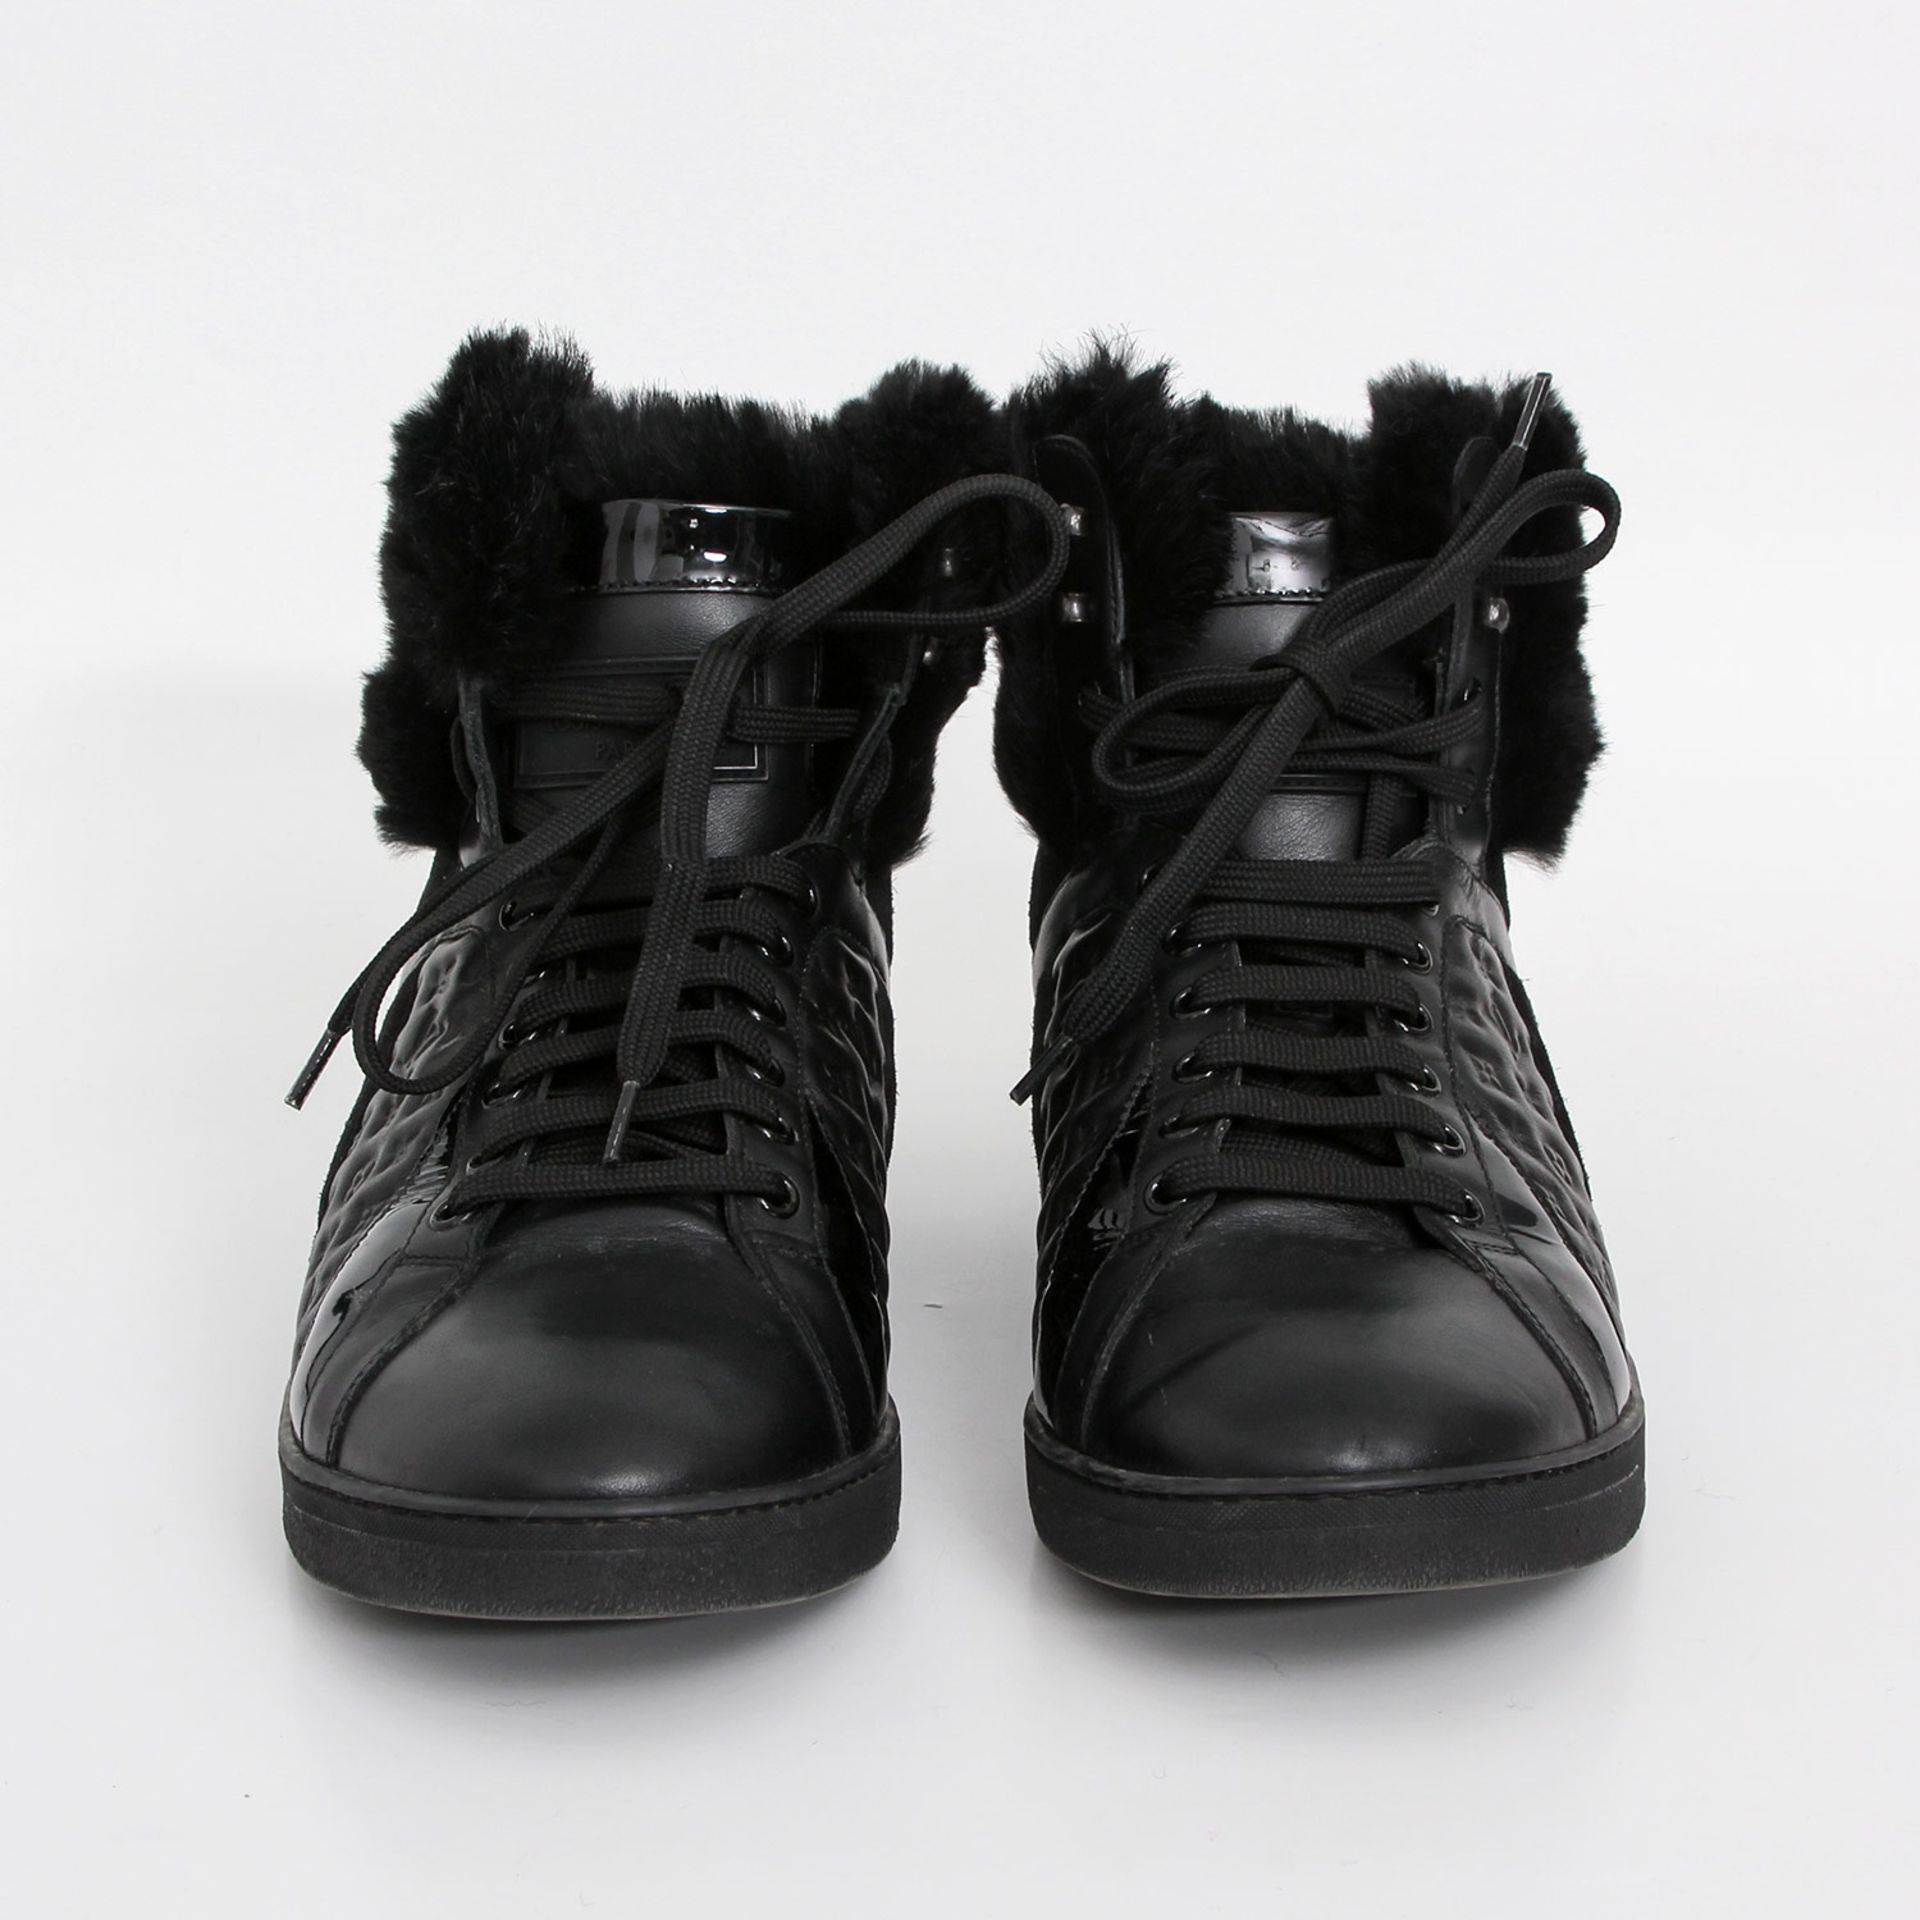 LOUIS VUITTON Hochschaft-Sneaker, Gr. 39/40; schwarz, Ledermix aus Glatt-, Velours-, Lack- und